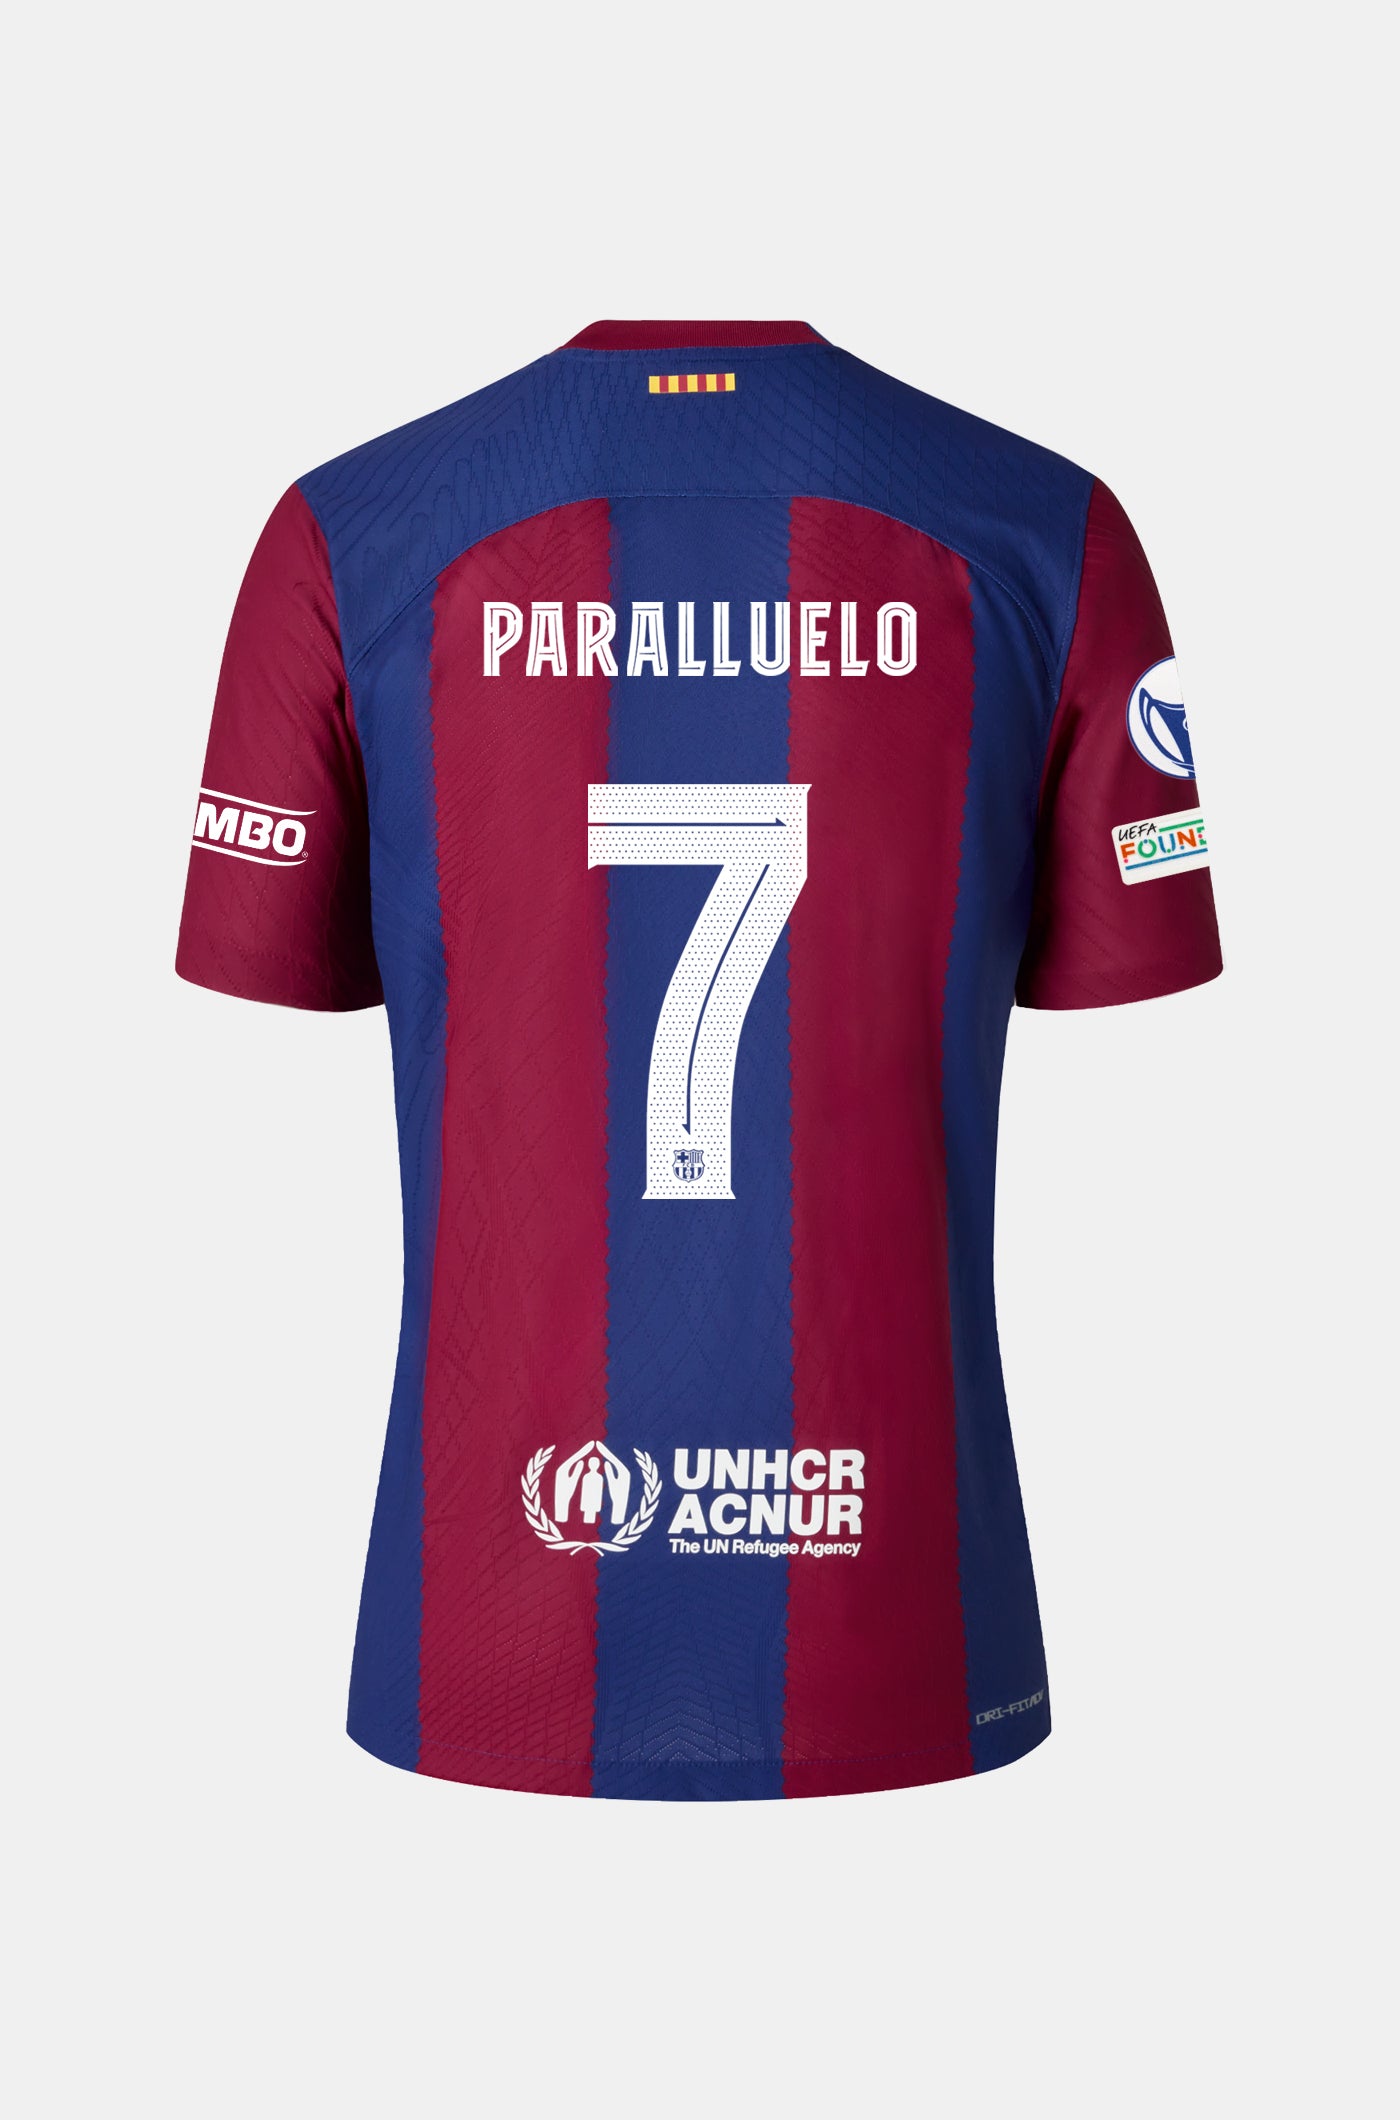 UWCL Samarreta primer equipament FC Barcelona 23/24 - Home - PARALLUELO